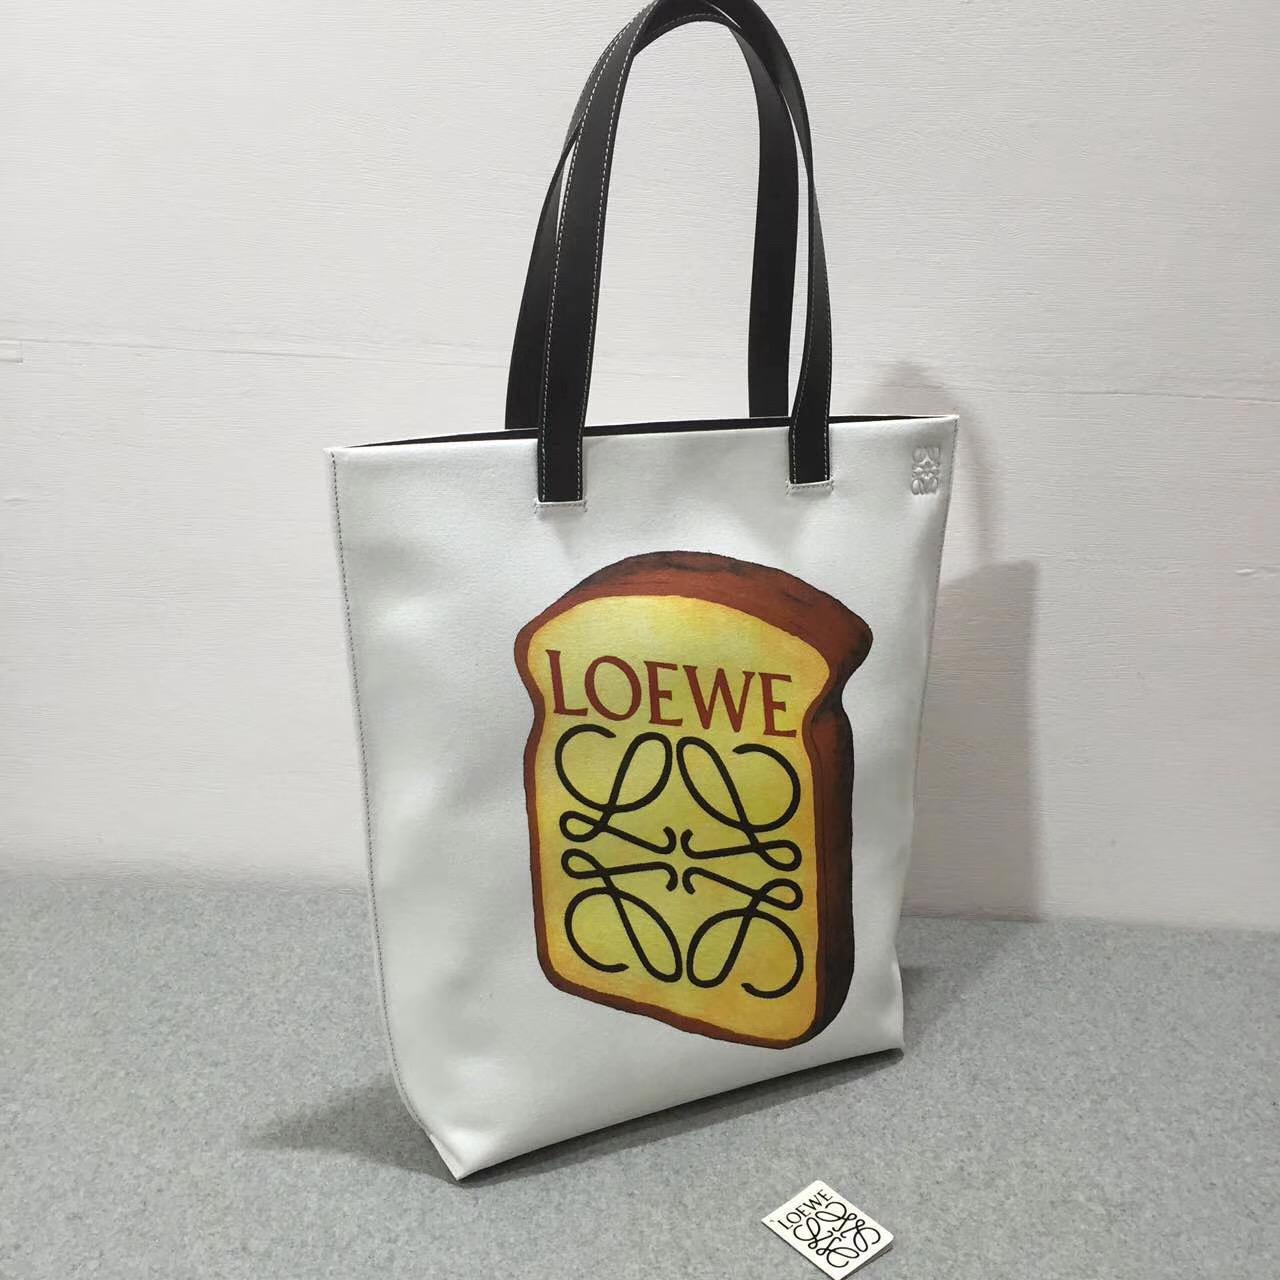 loewe羅意威 Tote Toast Bag Offwhite/Black